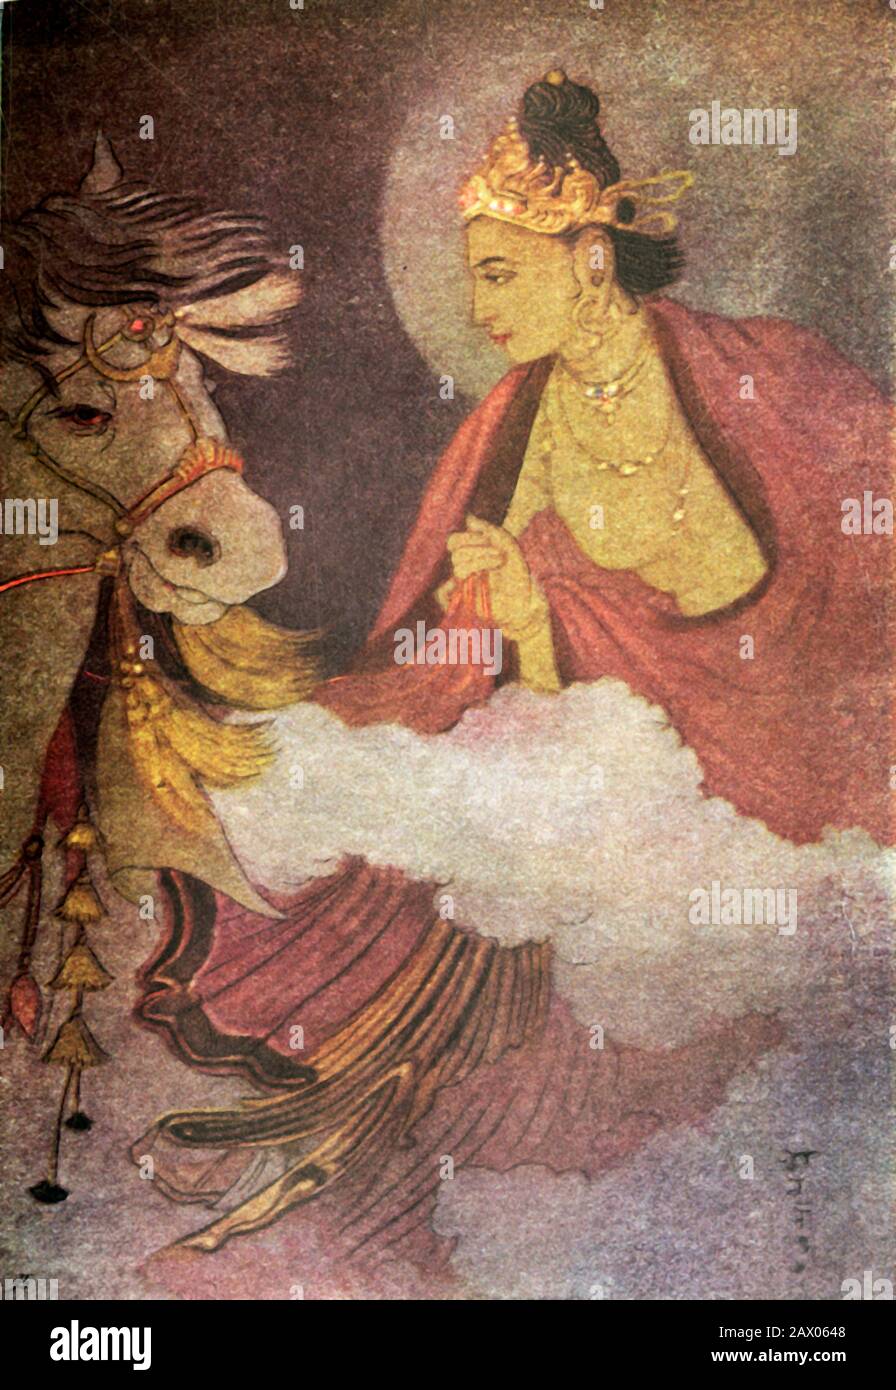 "Trennung von Prinz Siddhartha", 1920. Der Große Abschied ist die traditionelle Bezeichnung für den Weggang von Gautama Buddha (c563-c483 v. Chr.) aus seinem Palast in Kapilavastu, um ein asketisches Leben zu führen. Aus "Mythen der Hindus &amp; Buddhisten", von Der Schwester Nivedita und Ananda K. Coomaraswamy. [George G. Harrap &amp; Company Ltd, London, 1920] Stockfoto